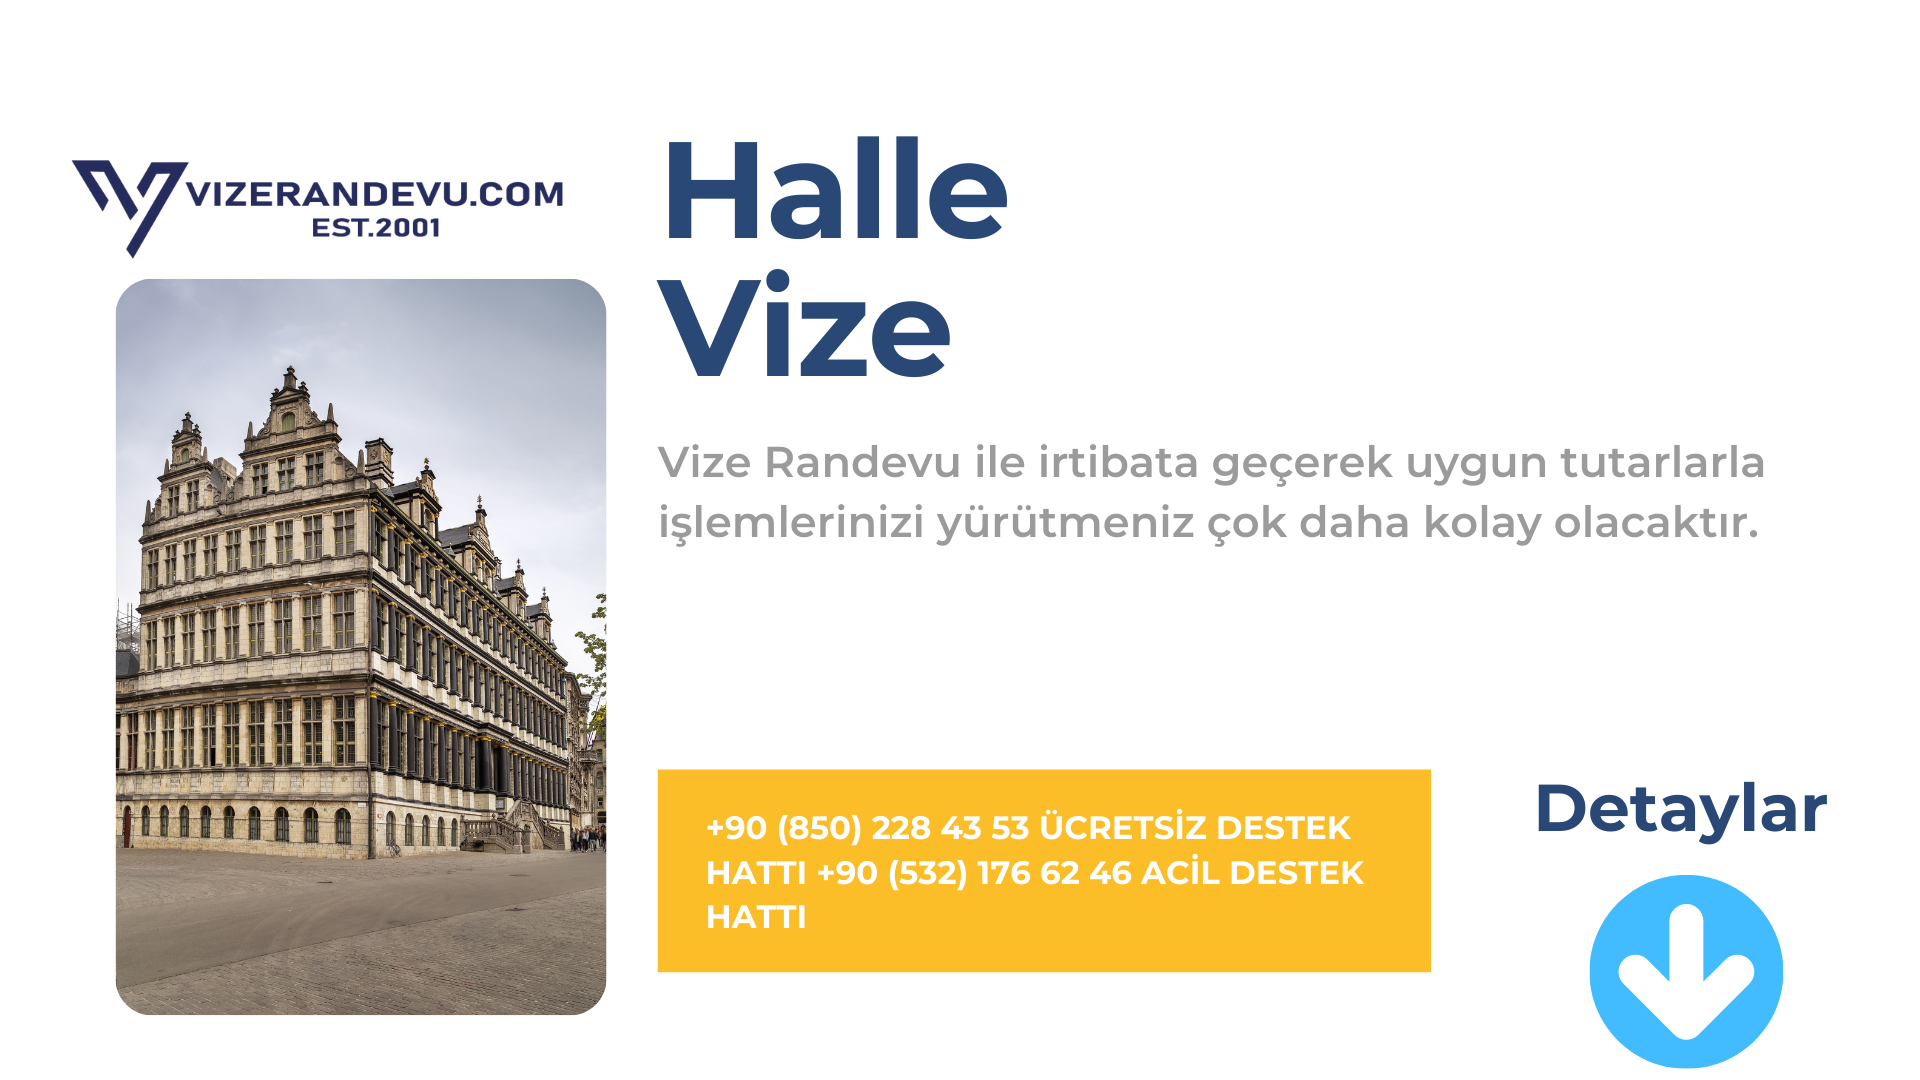 Halle Vize